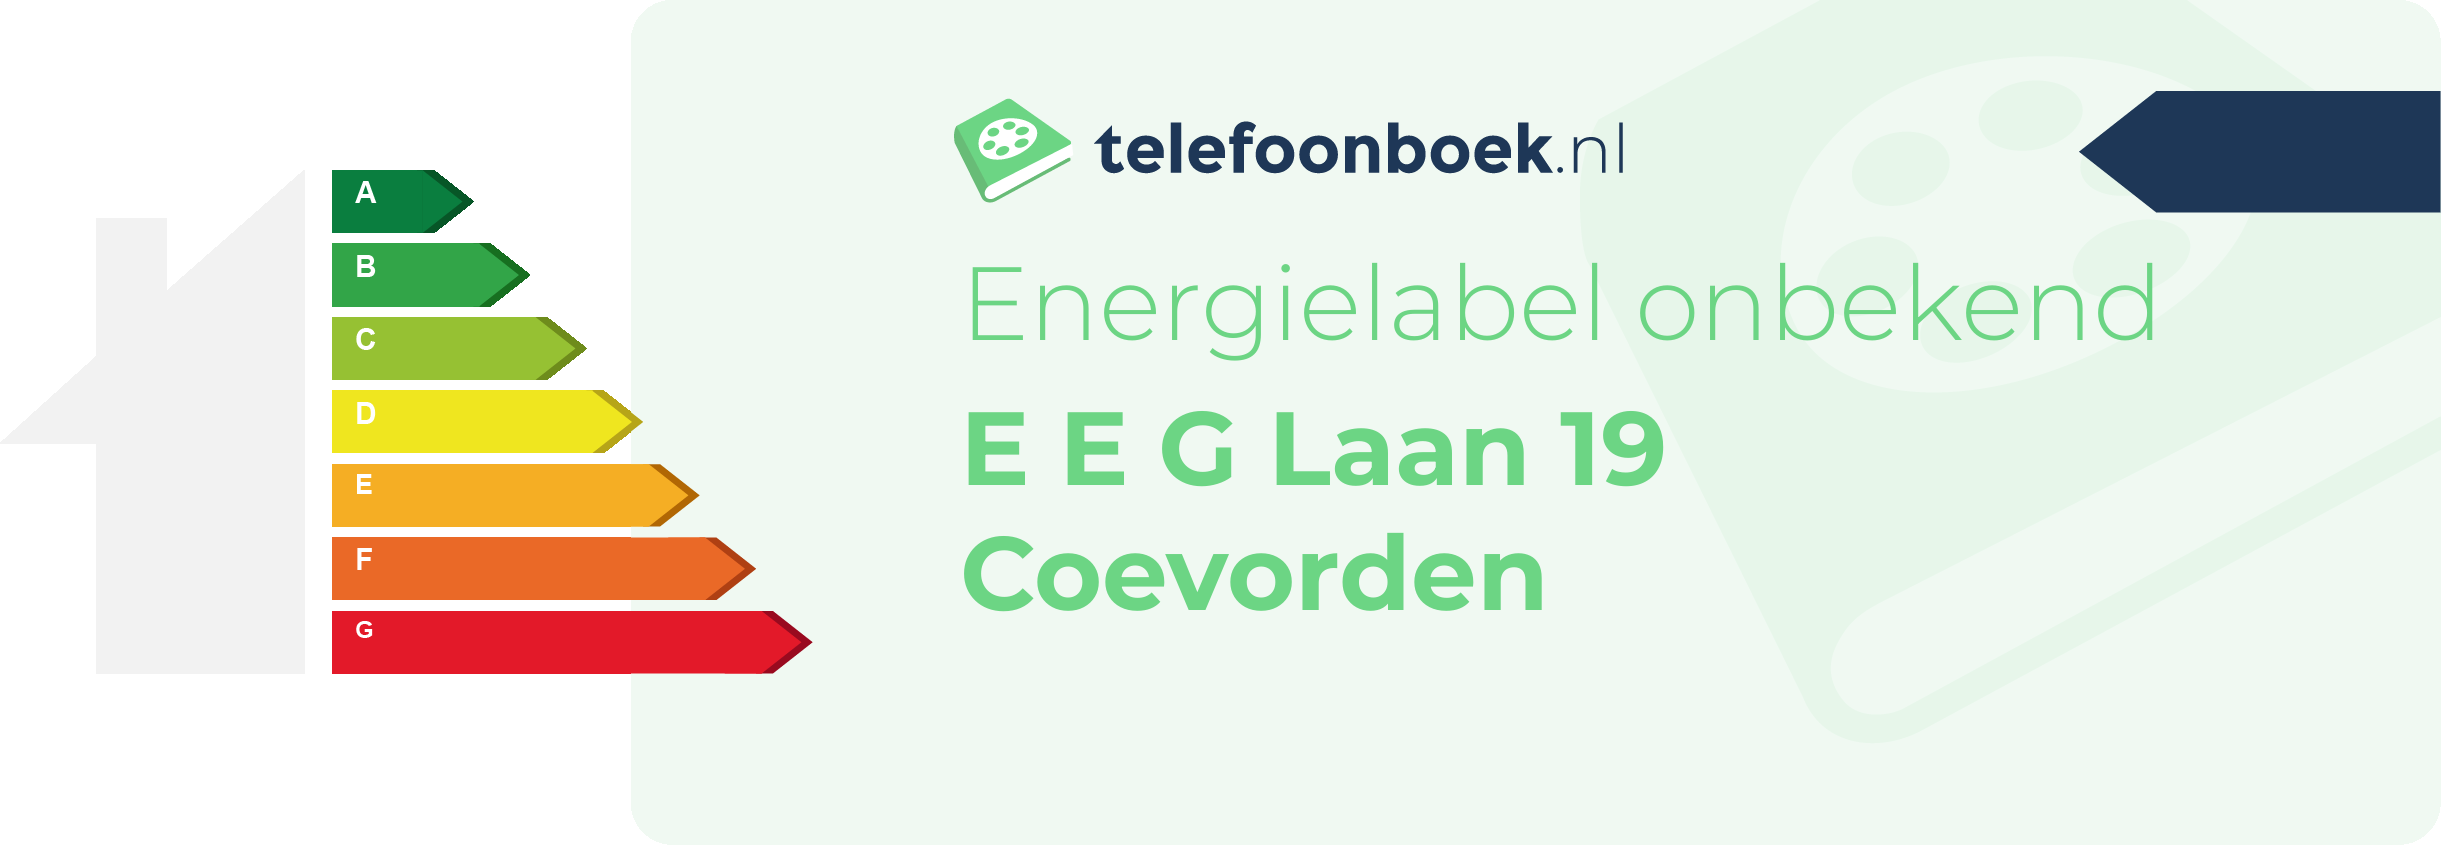 Energielabel E E G Laan 19 Coevorden